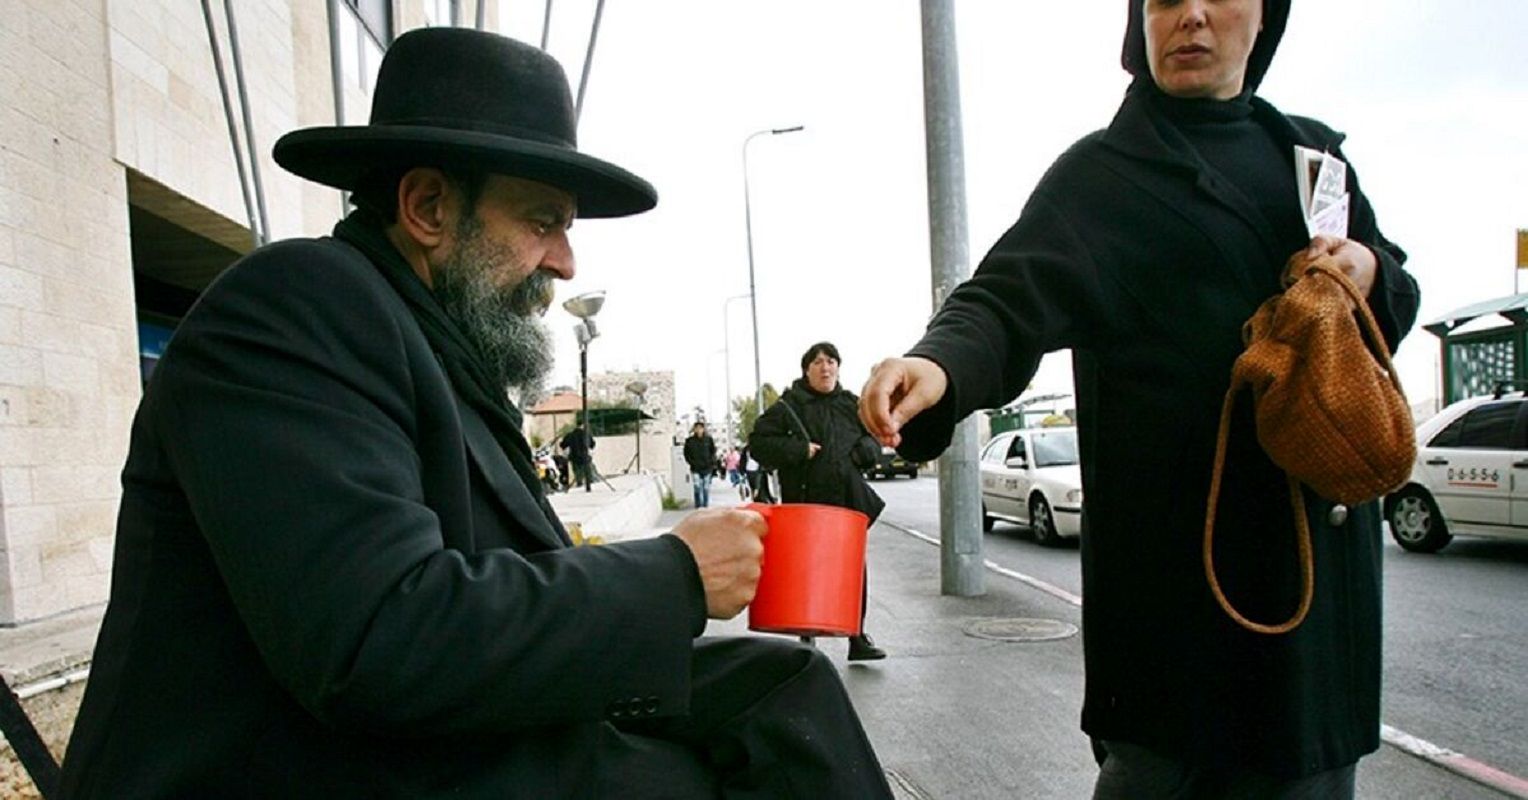  جنگ ویرانگر غزه اقتصاد اسرائیل را فلج کرد  / درخواست 160 هزار نفر برای دریافت بیمه بیکاری 